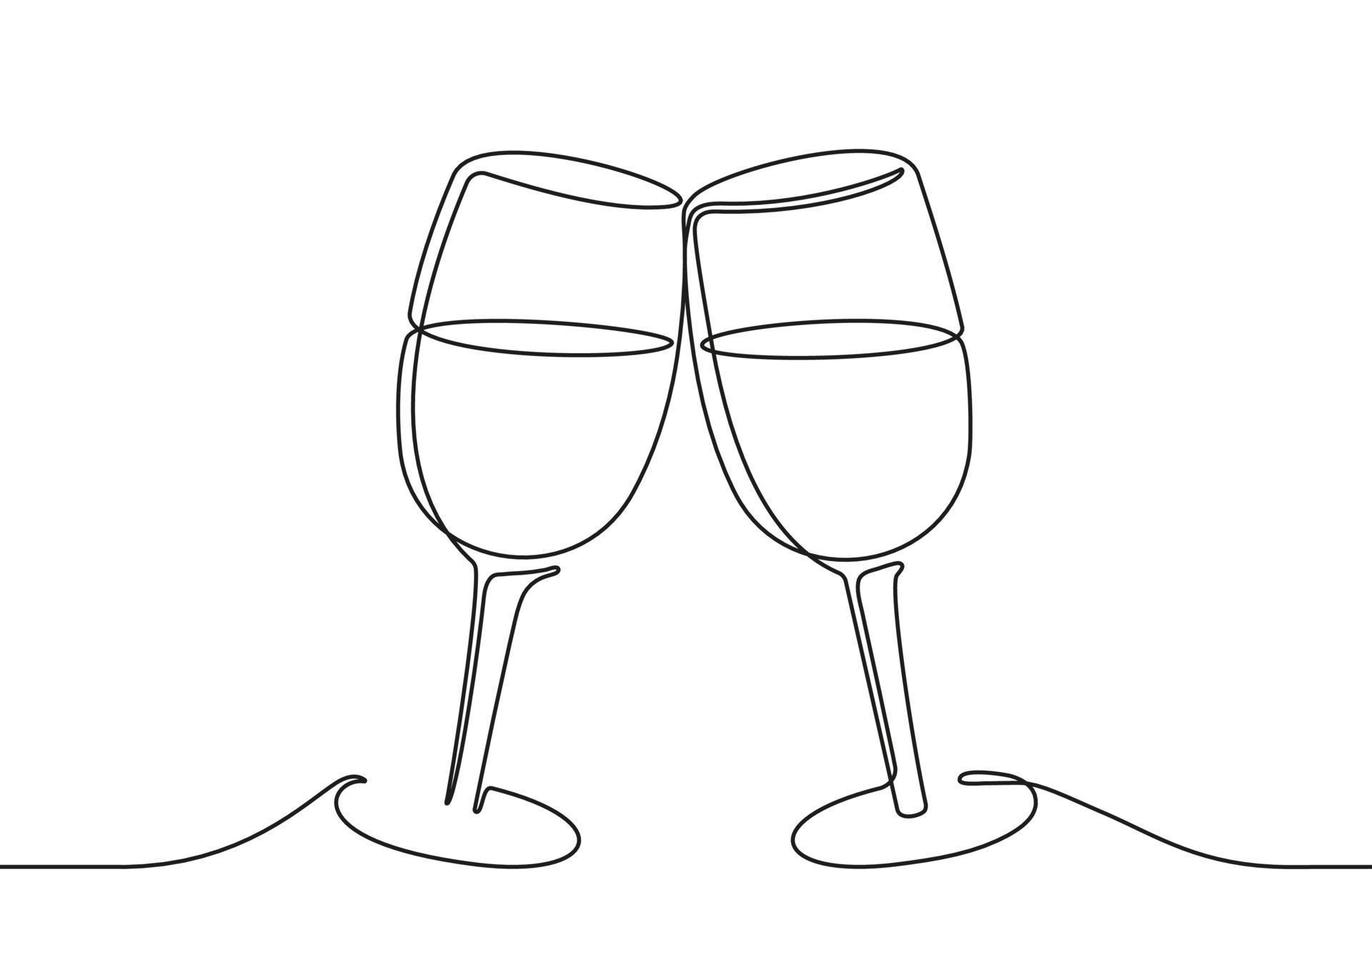 twee wijnglazen gerinkel, doorlopende zwarte lijntekening. vector illustratie